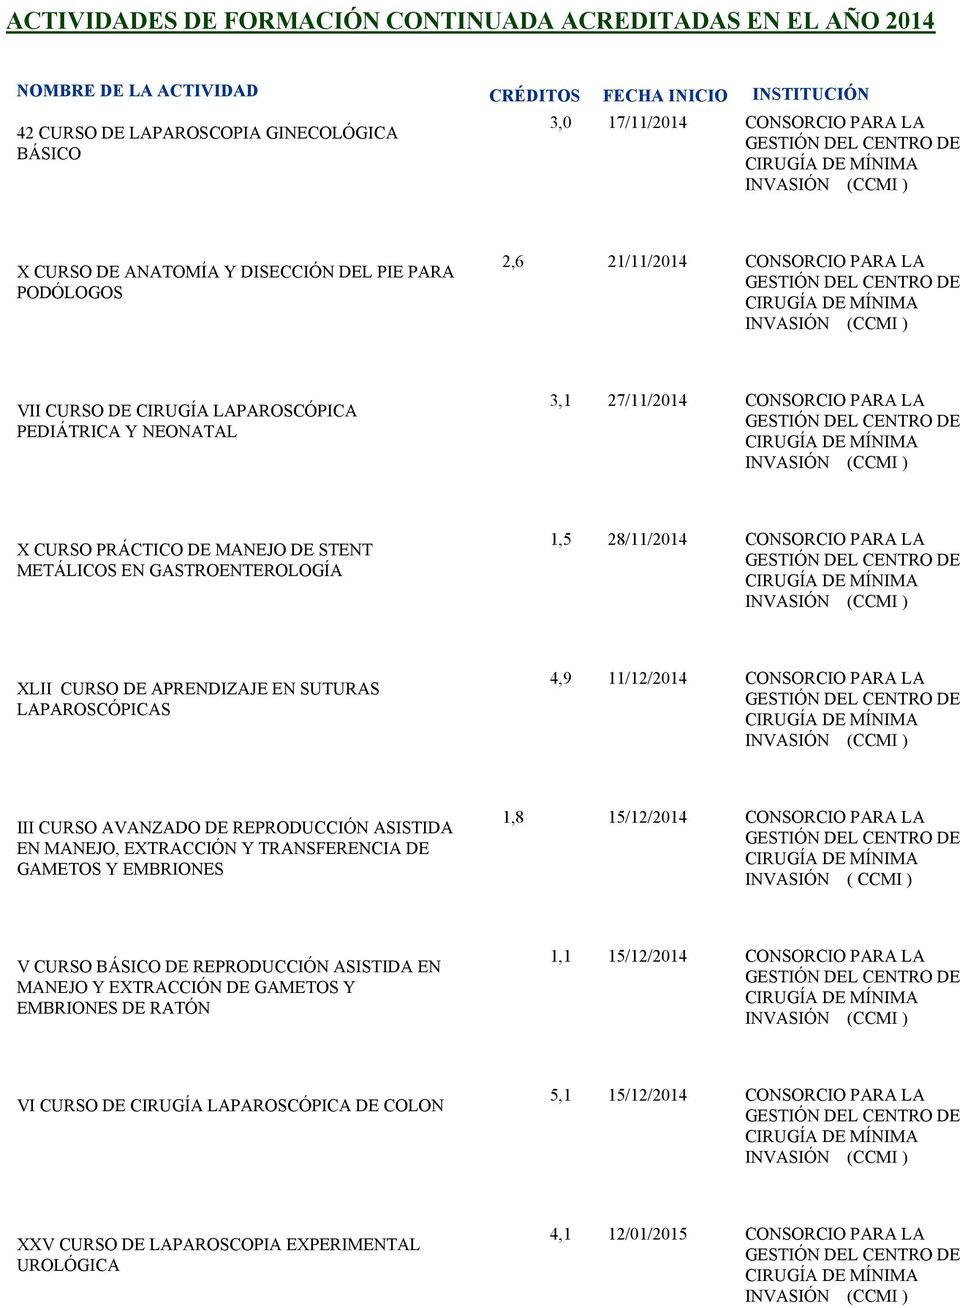 SUTURAS LAPAROSCÓPICAS 4,9 11/12/2014 CONSORCIO PARA LA III CURSO AVANZADO DE REPRODUCCIÓN ASISTIDA EN MANEJO, EXTRACCIÓN Y TRANSFERENCIA DE GAMETOS Y EMBRIONES 1,8 15/12/2014 CONSORCIO PARA LA